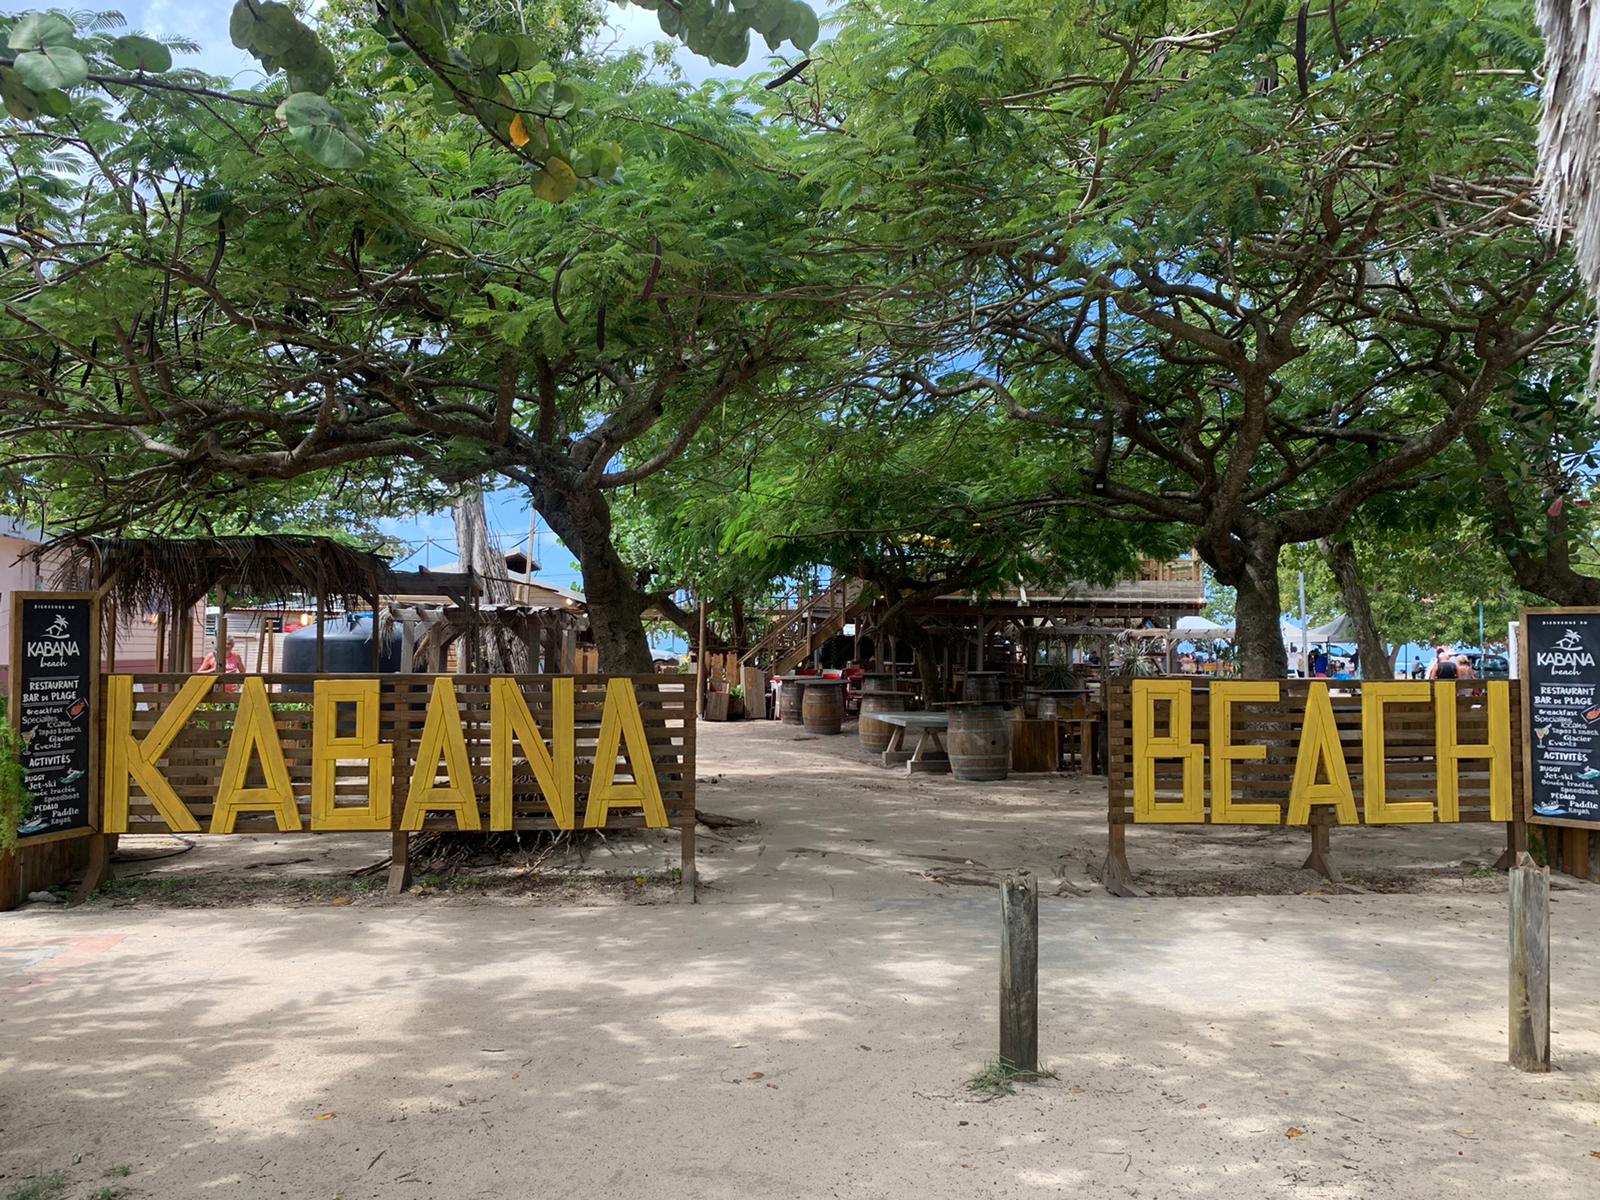     Le Kabana Beach sous le coup d’une fermeture administrative temporaire

